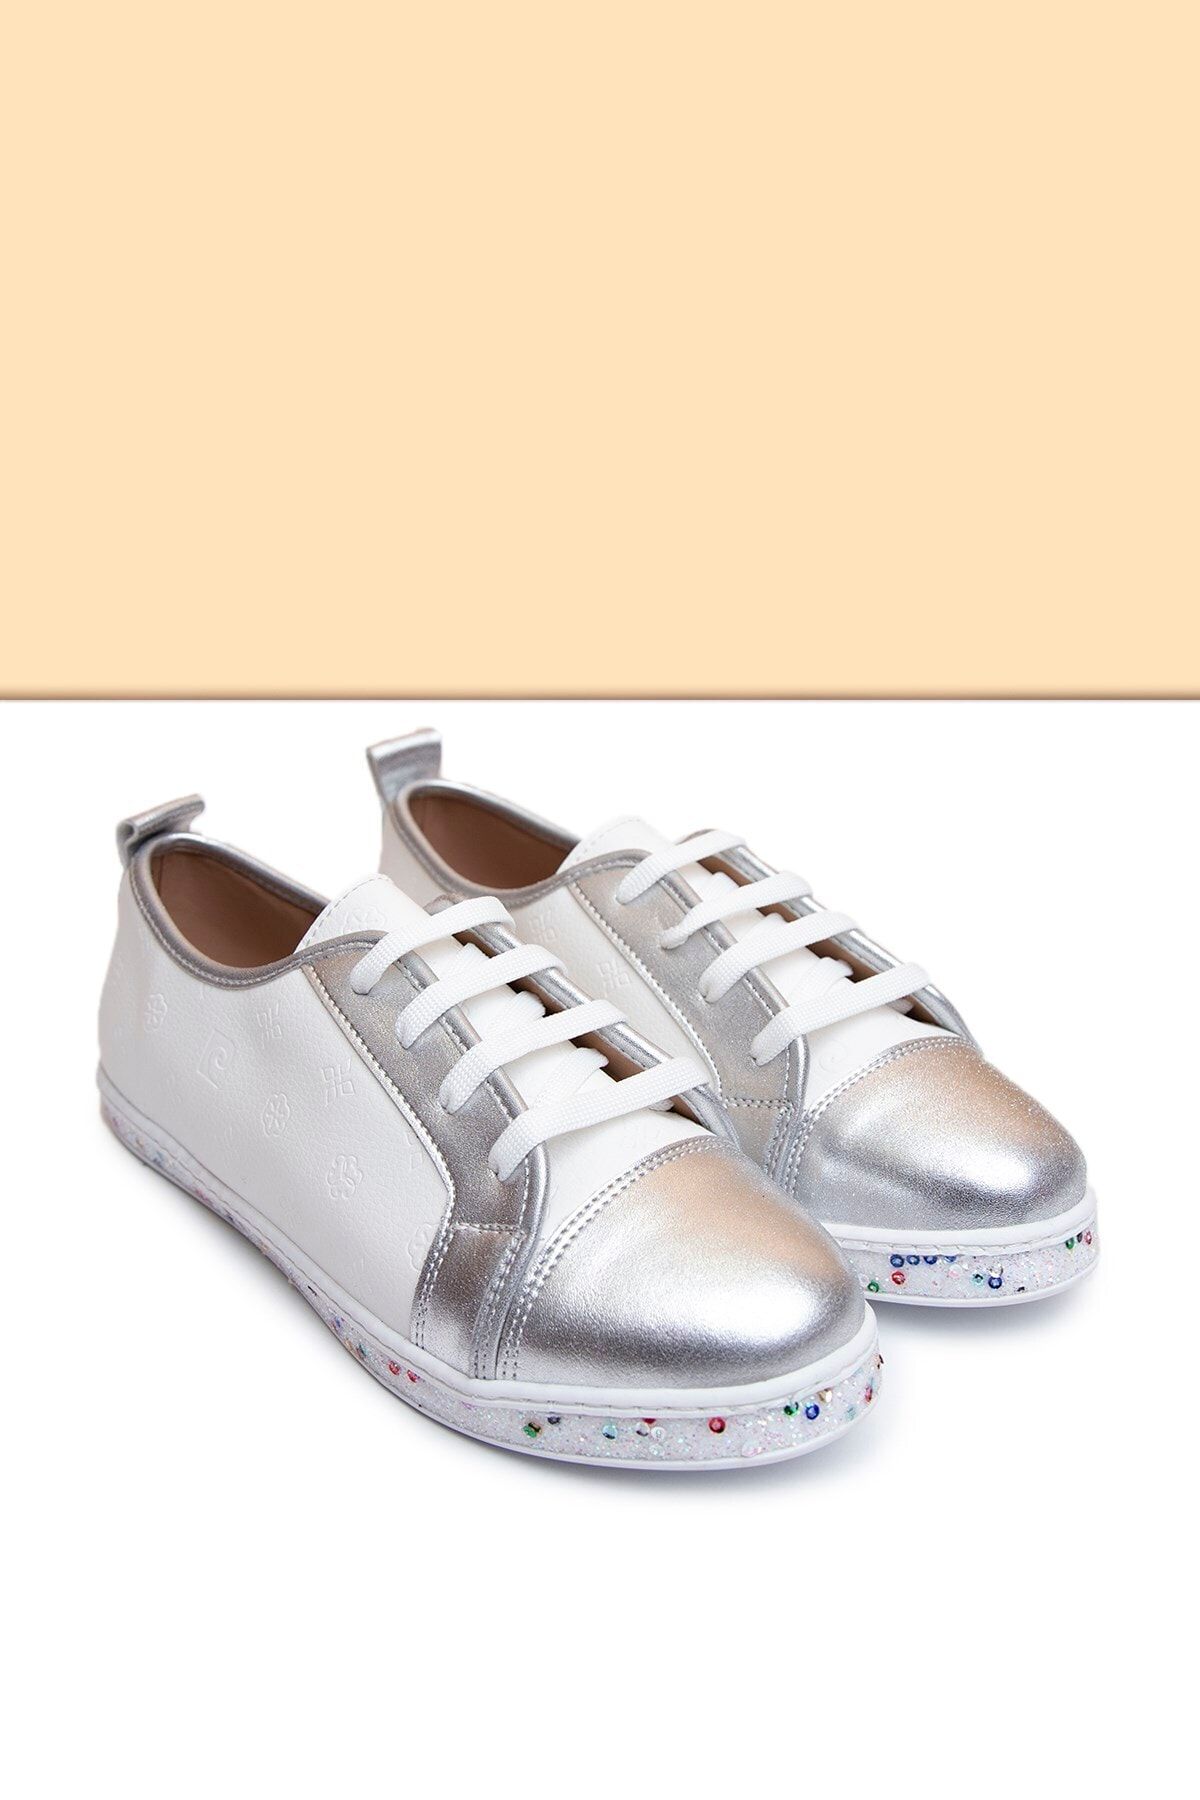 Pierre Cardin Pc-50616 Beyaz Kadın Ayakkabı